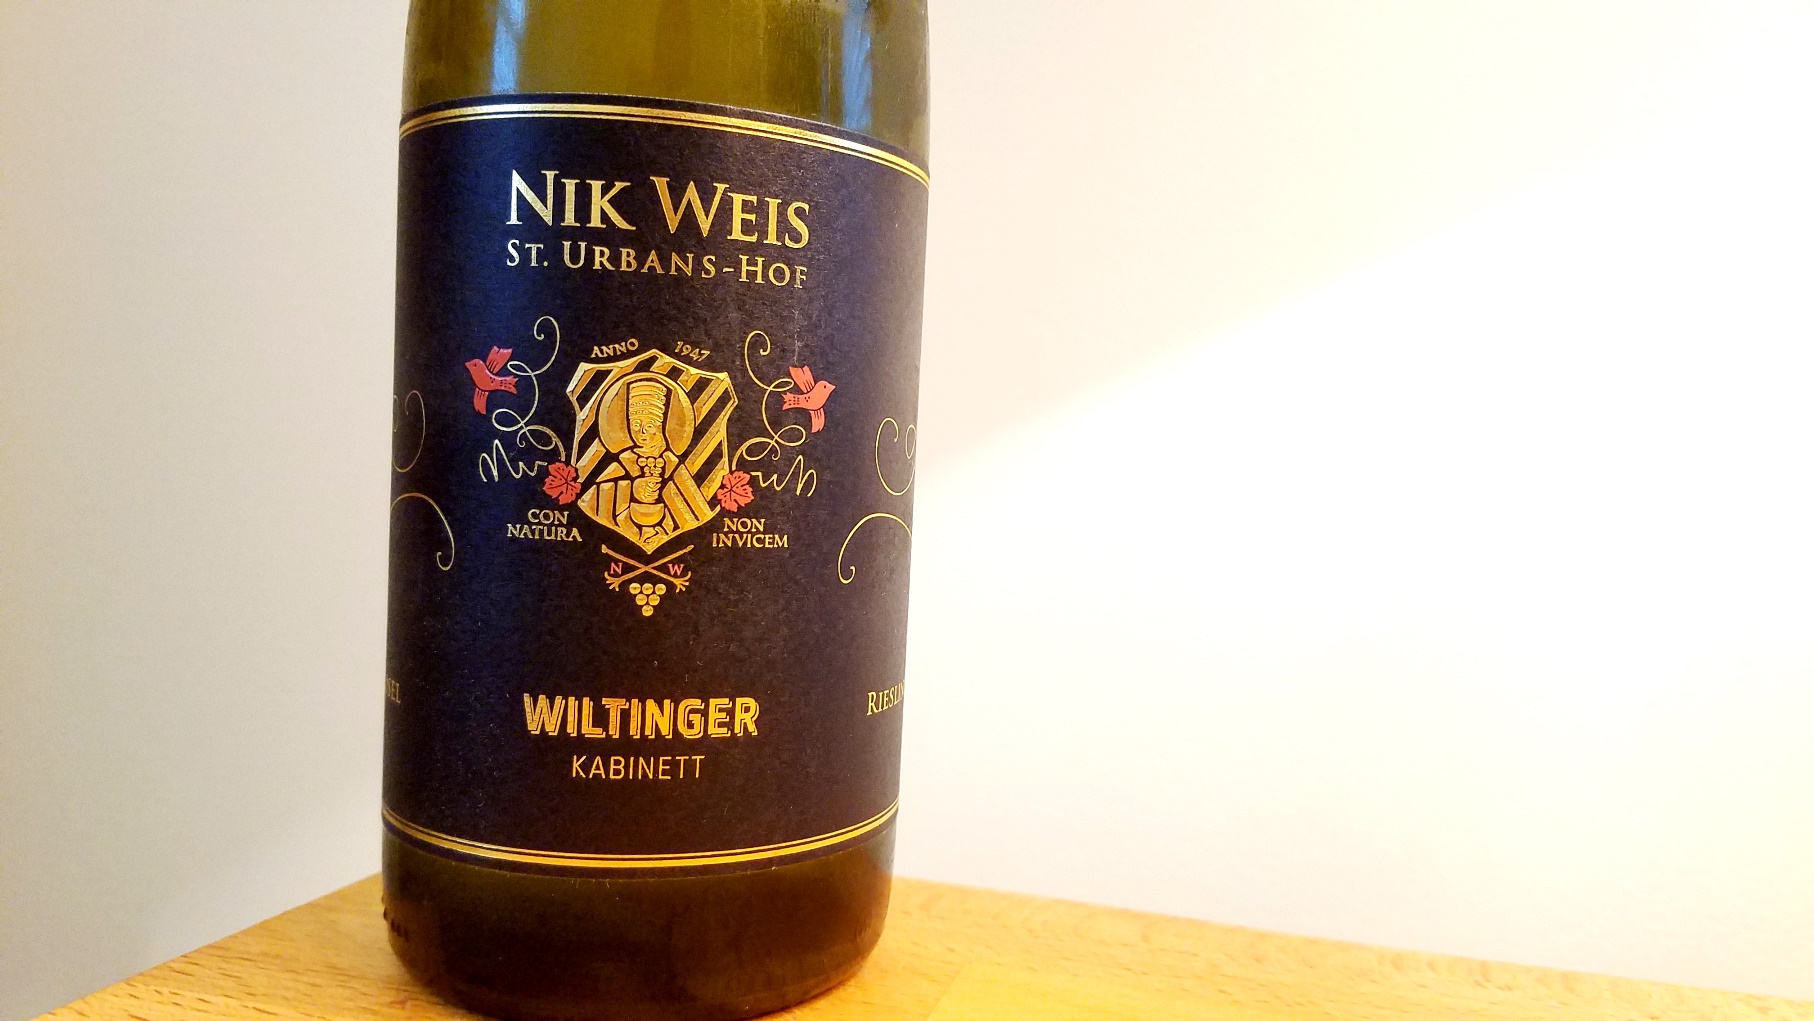 Nik Weis St. Urbans-Hof, Wiltinger Kabinett Riesling 2018, Mosel, Germany, Wine Casual